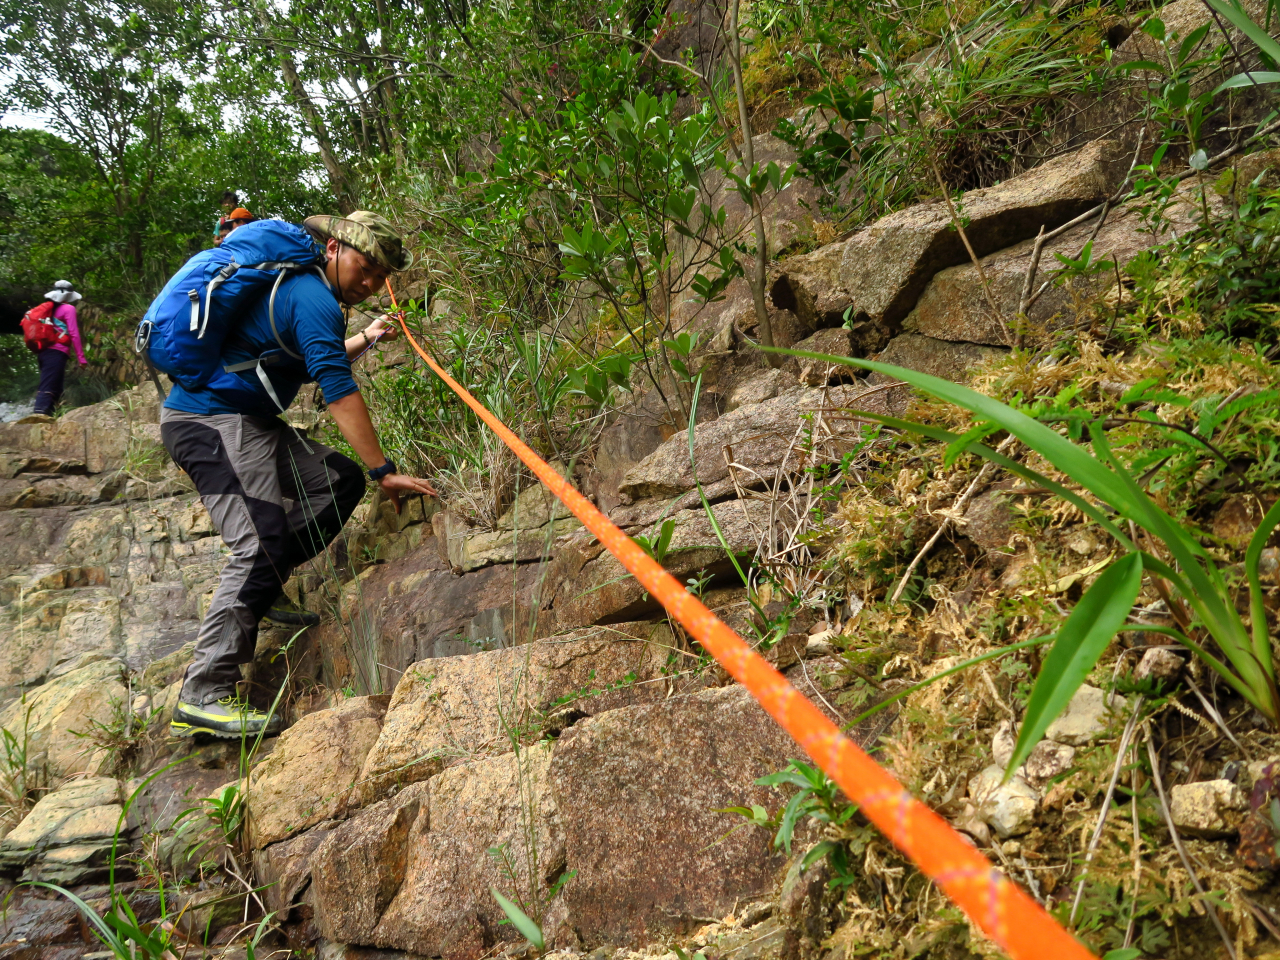 不同的地理環境亦會直接為登山者帶來危機，溪澗河谷、懸崖險脊、碎滑山徑皆可構成風險